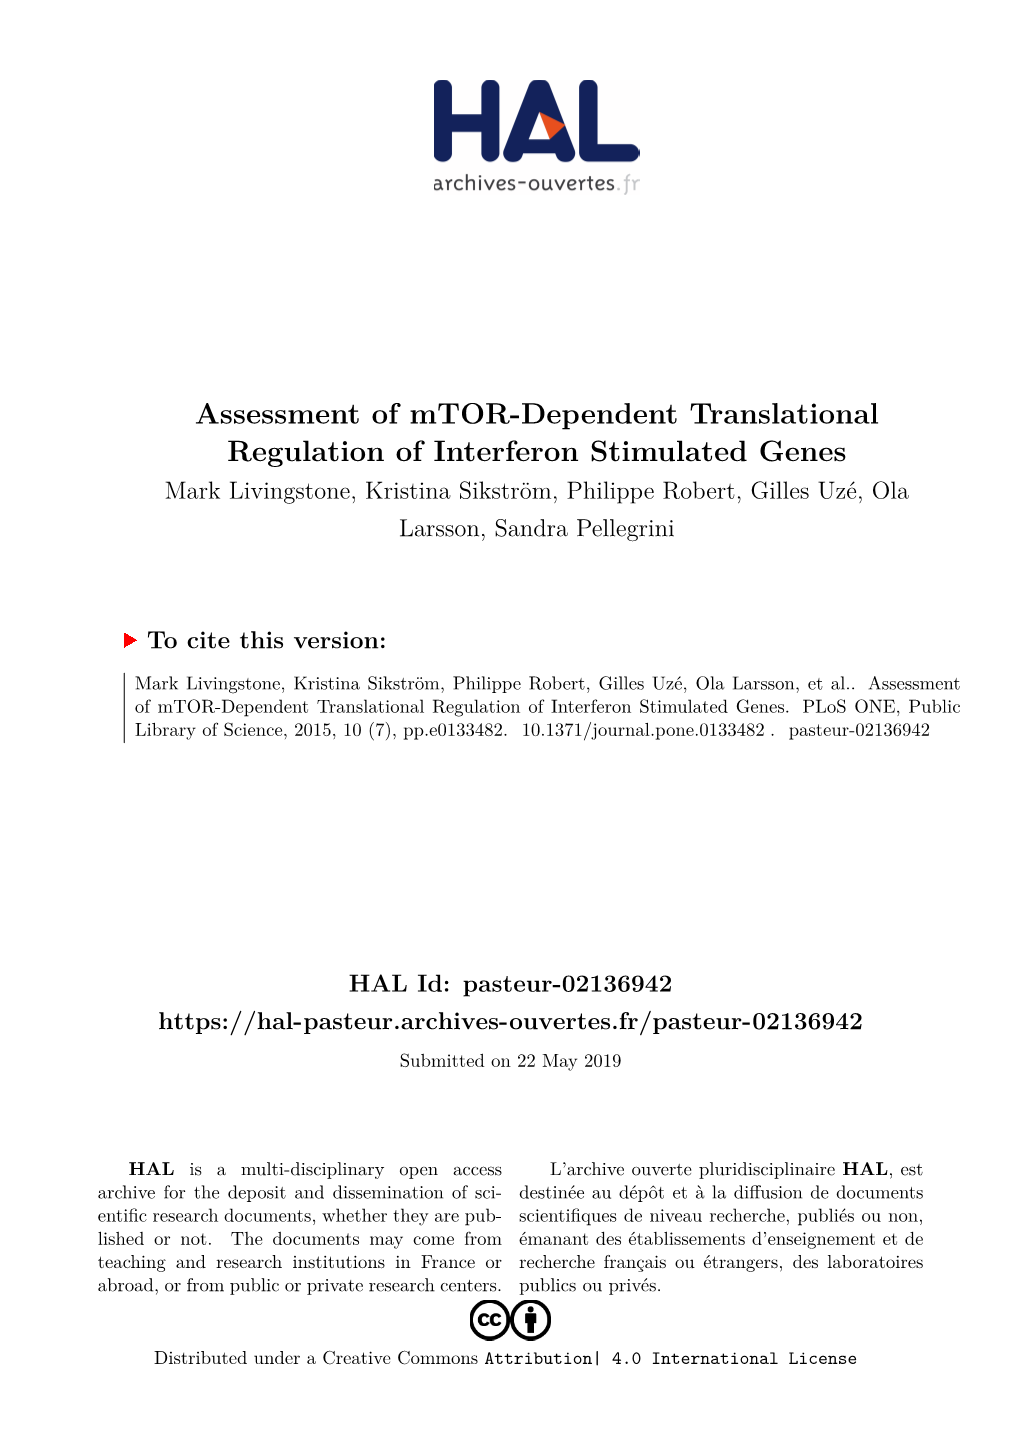 Assessment of Mtor-Dependent Translational Regulation Of